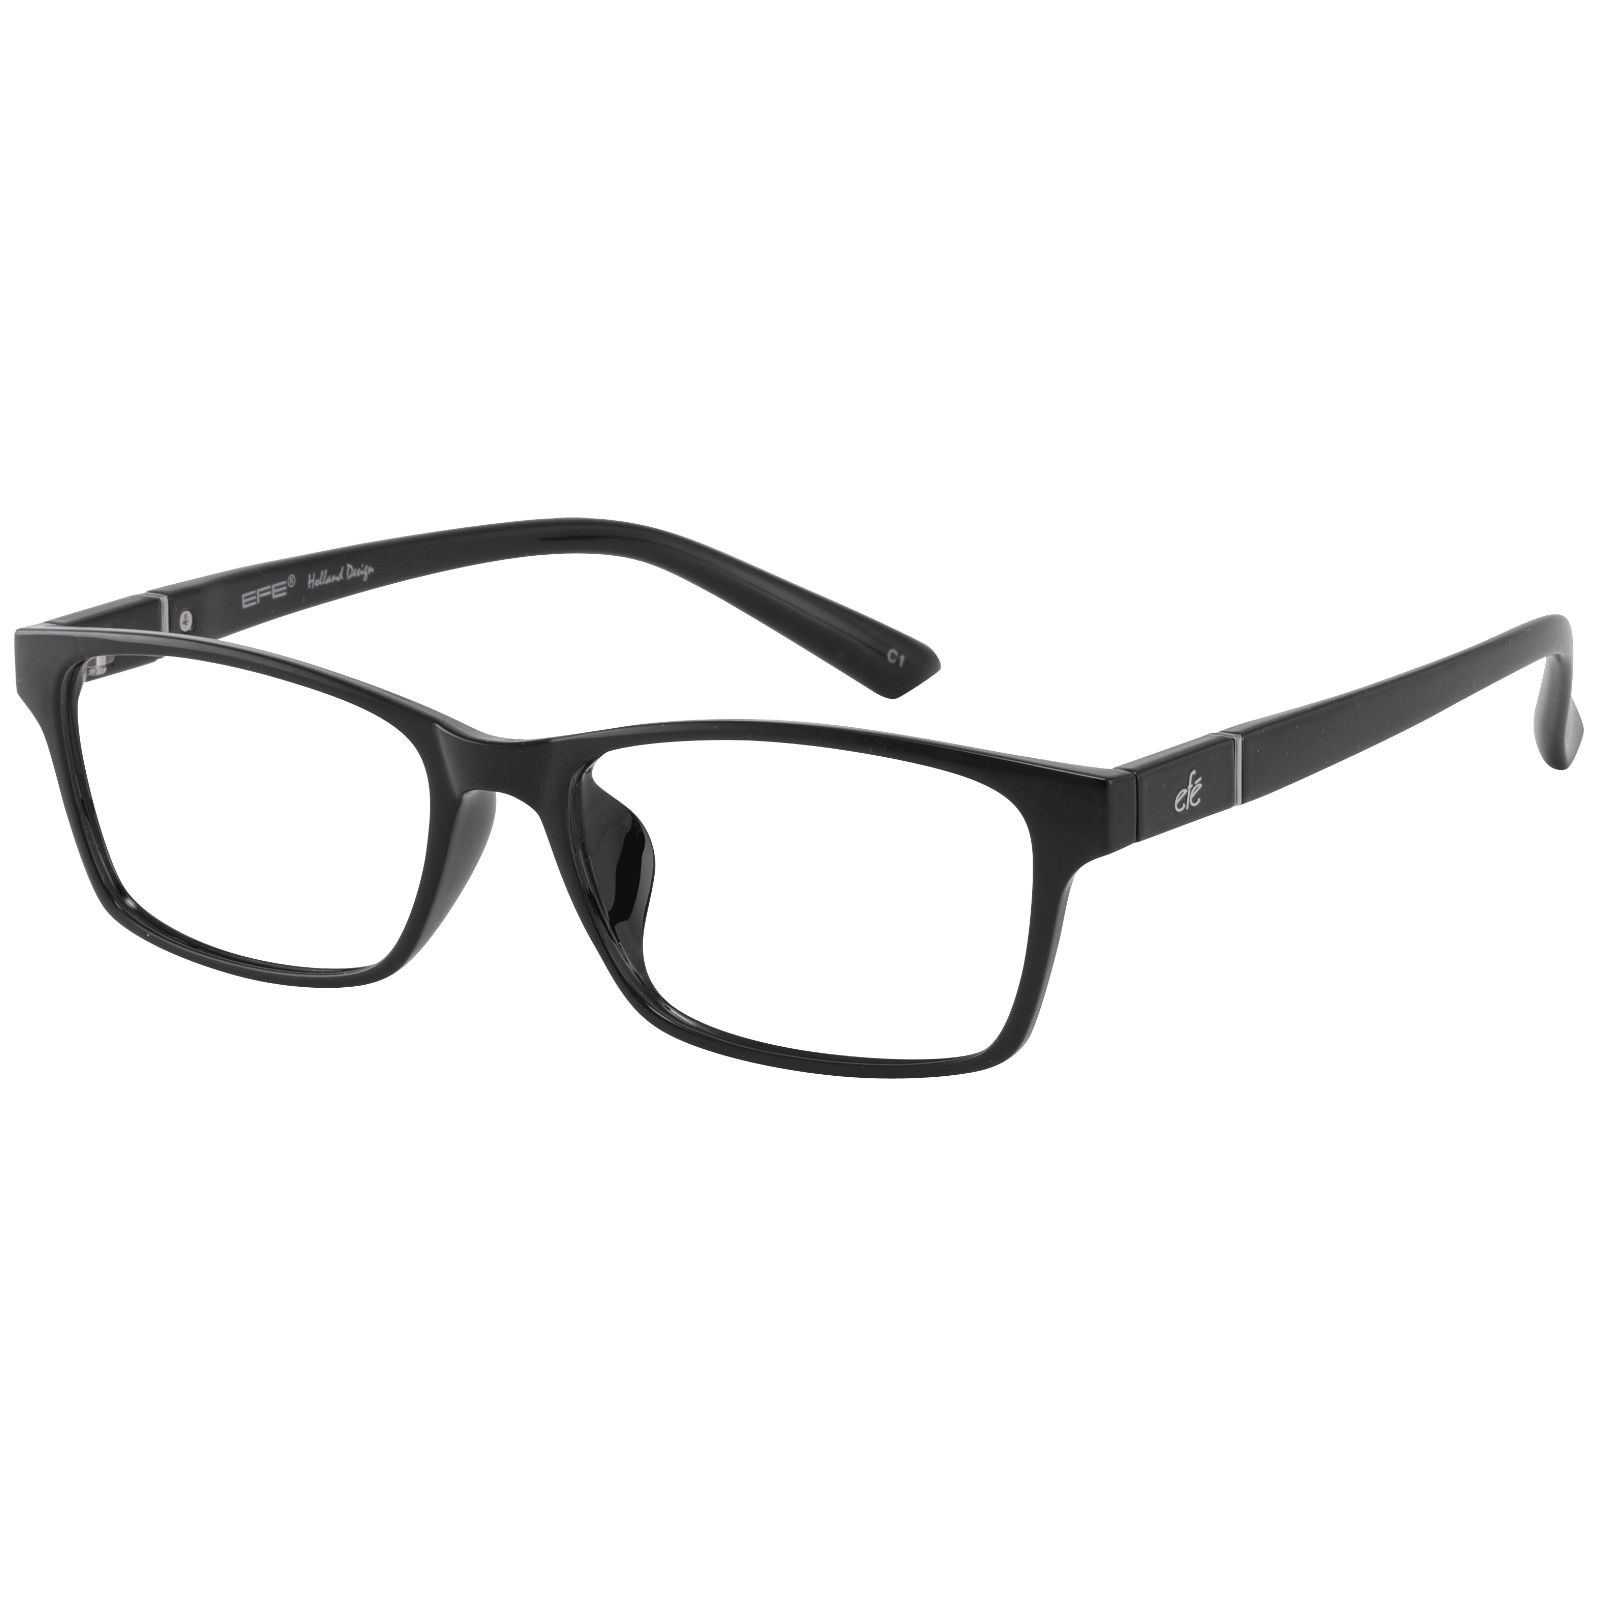 Hebrus - Rectangle Black Reading Glasses for Men & Women